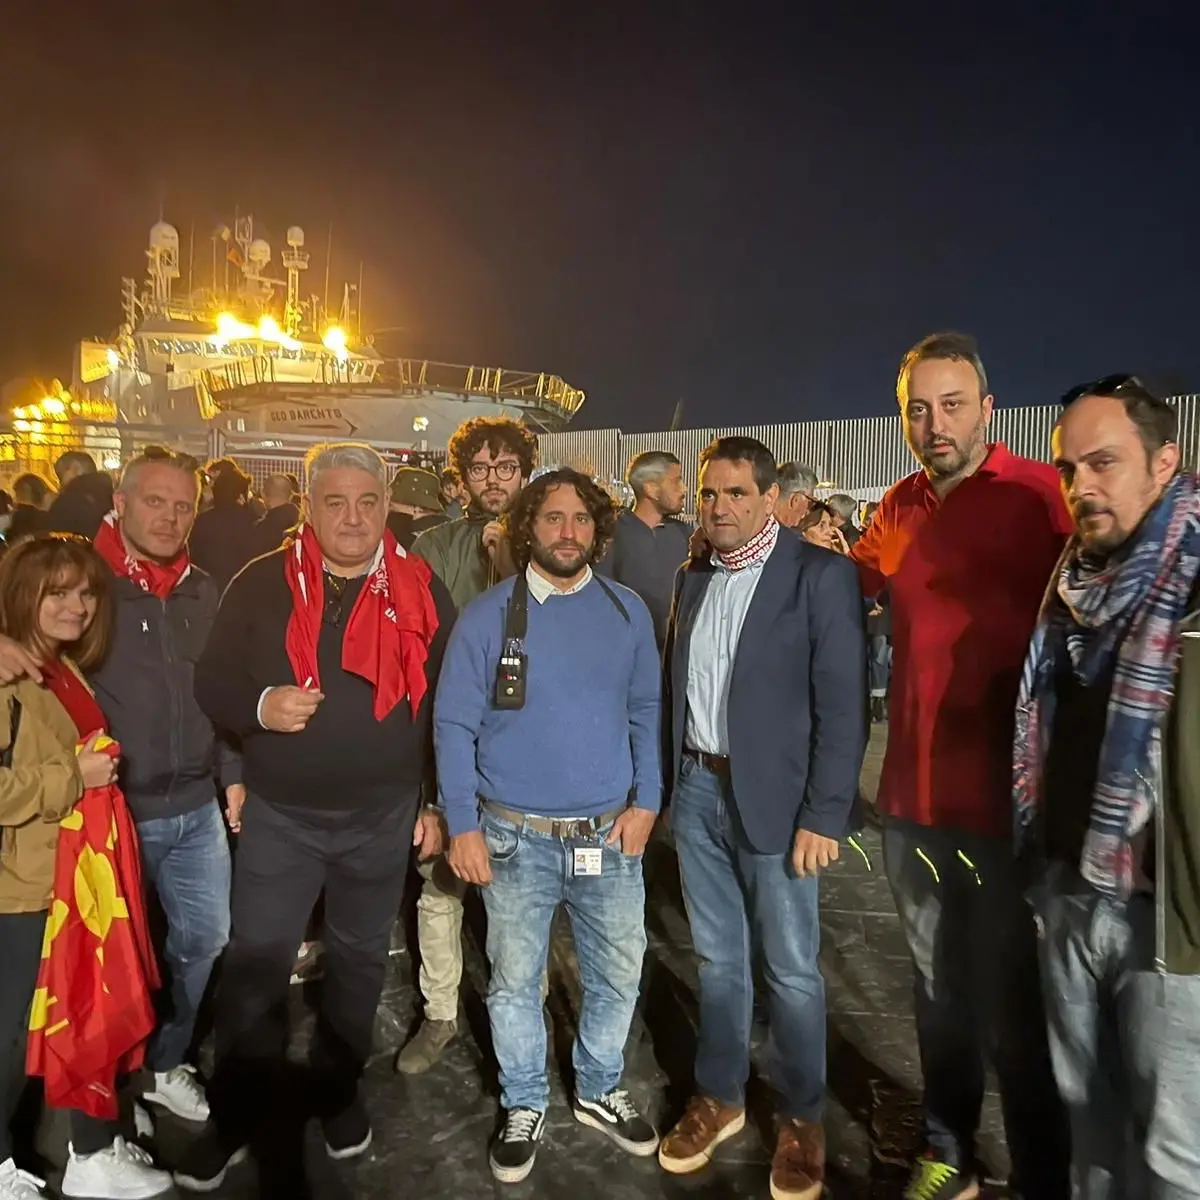 A Catania vince la società civile, tutti a terra i migranti